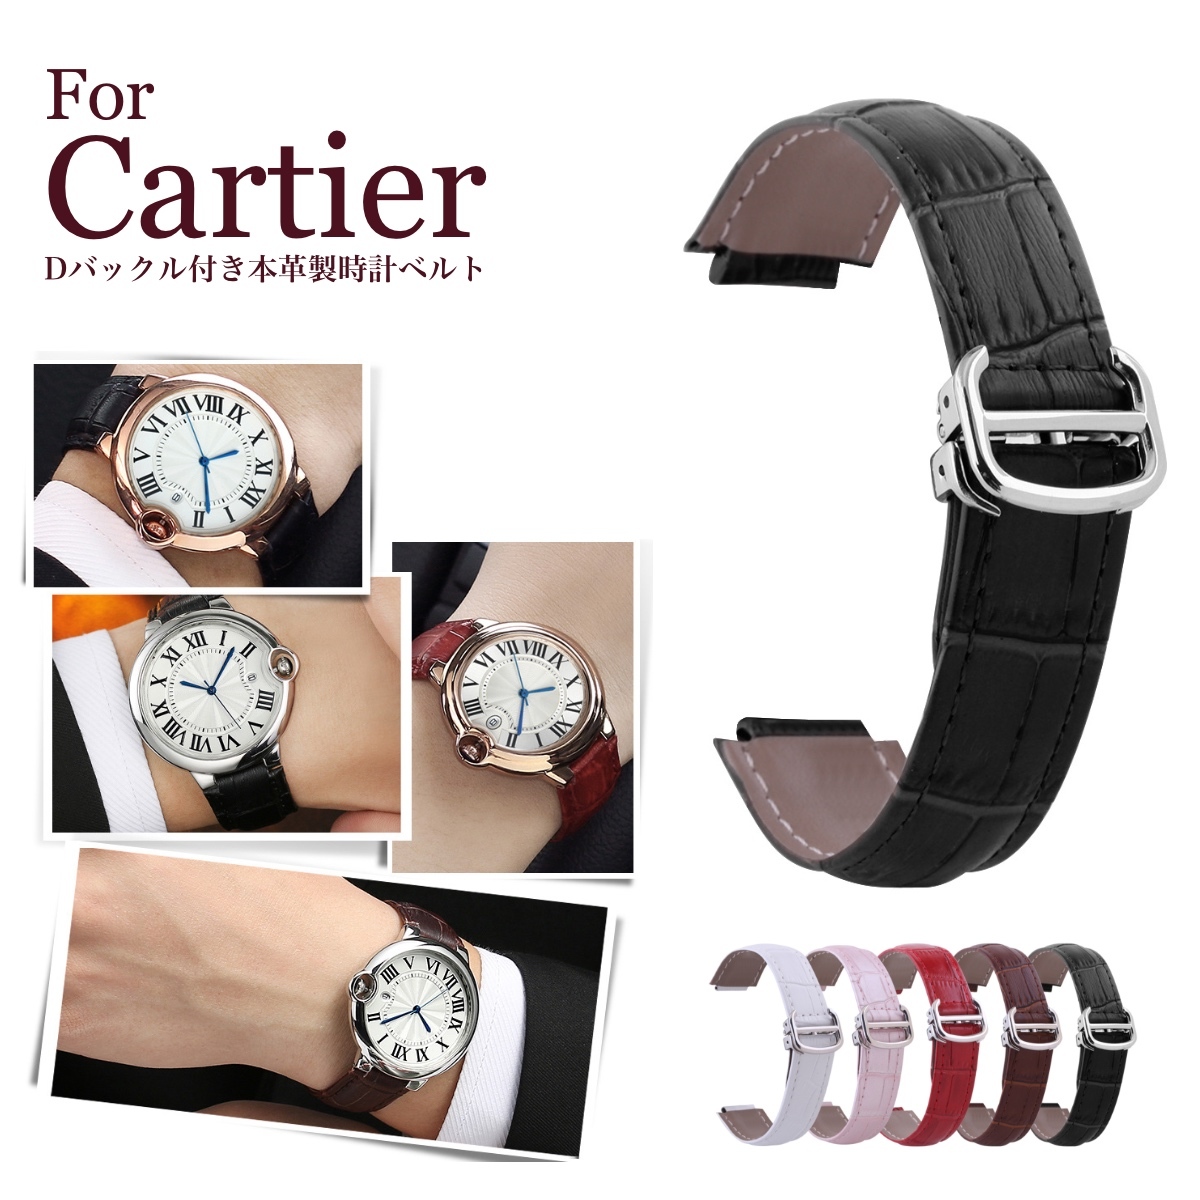 【楽天市場】【 for Cartier 】 Dバックル付き 本革製 クロコダイル型押し 時計ベルト 時計バンド 11Straps